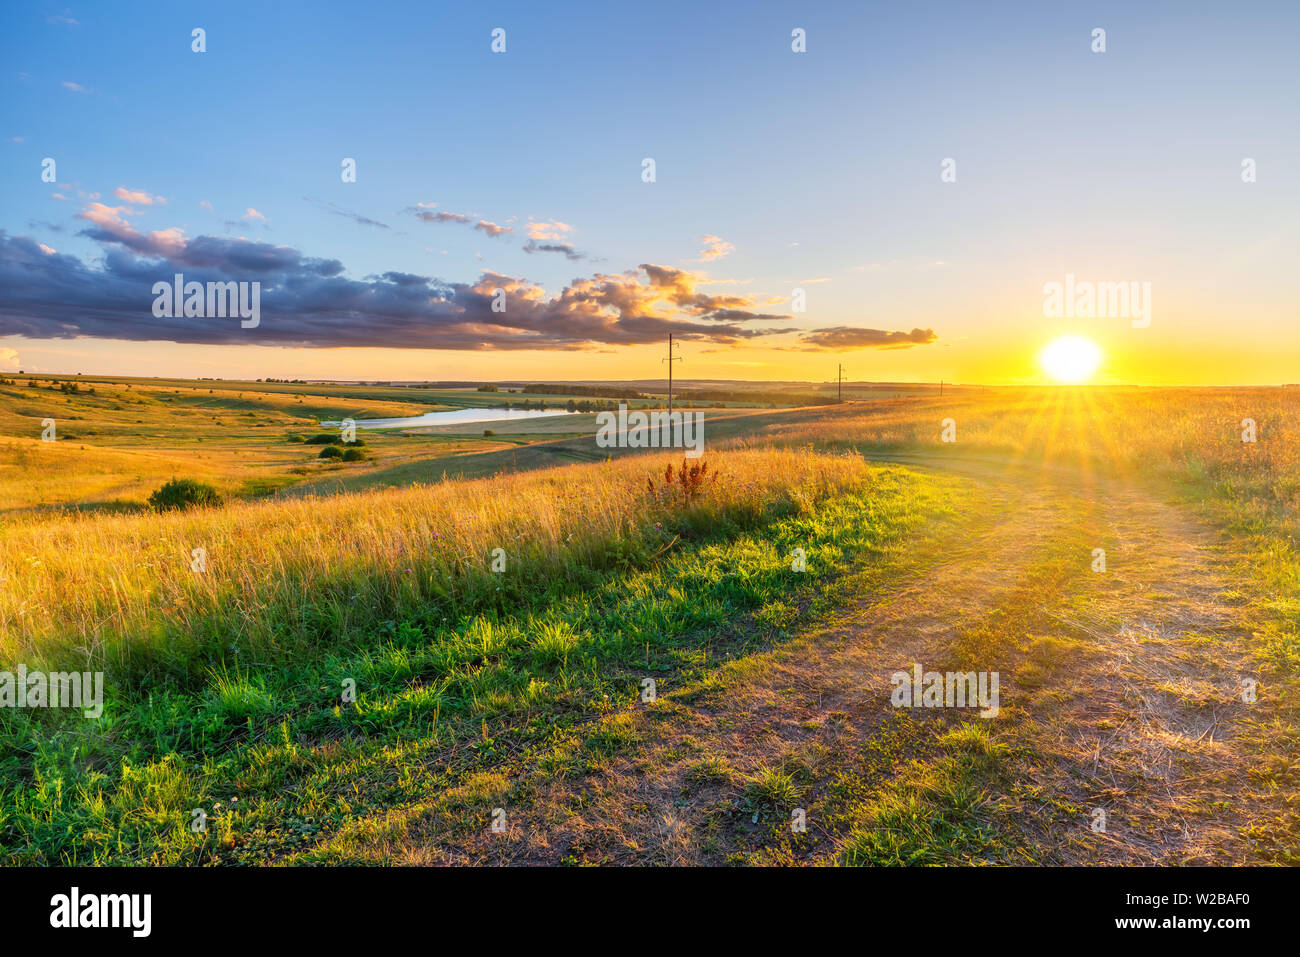 Paysage rural avec sol road et champ de blé à été magnifique coucher du soleil Banque D'Images